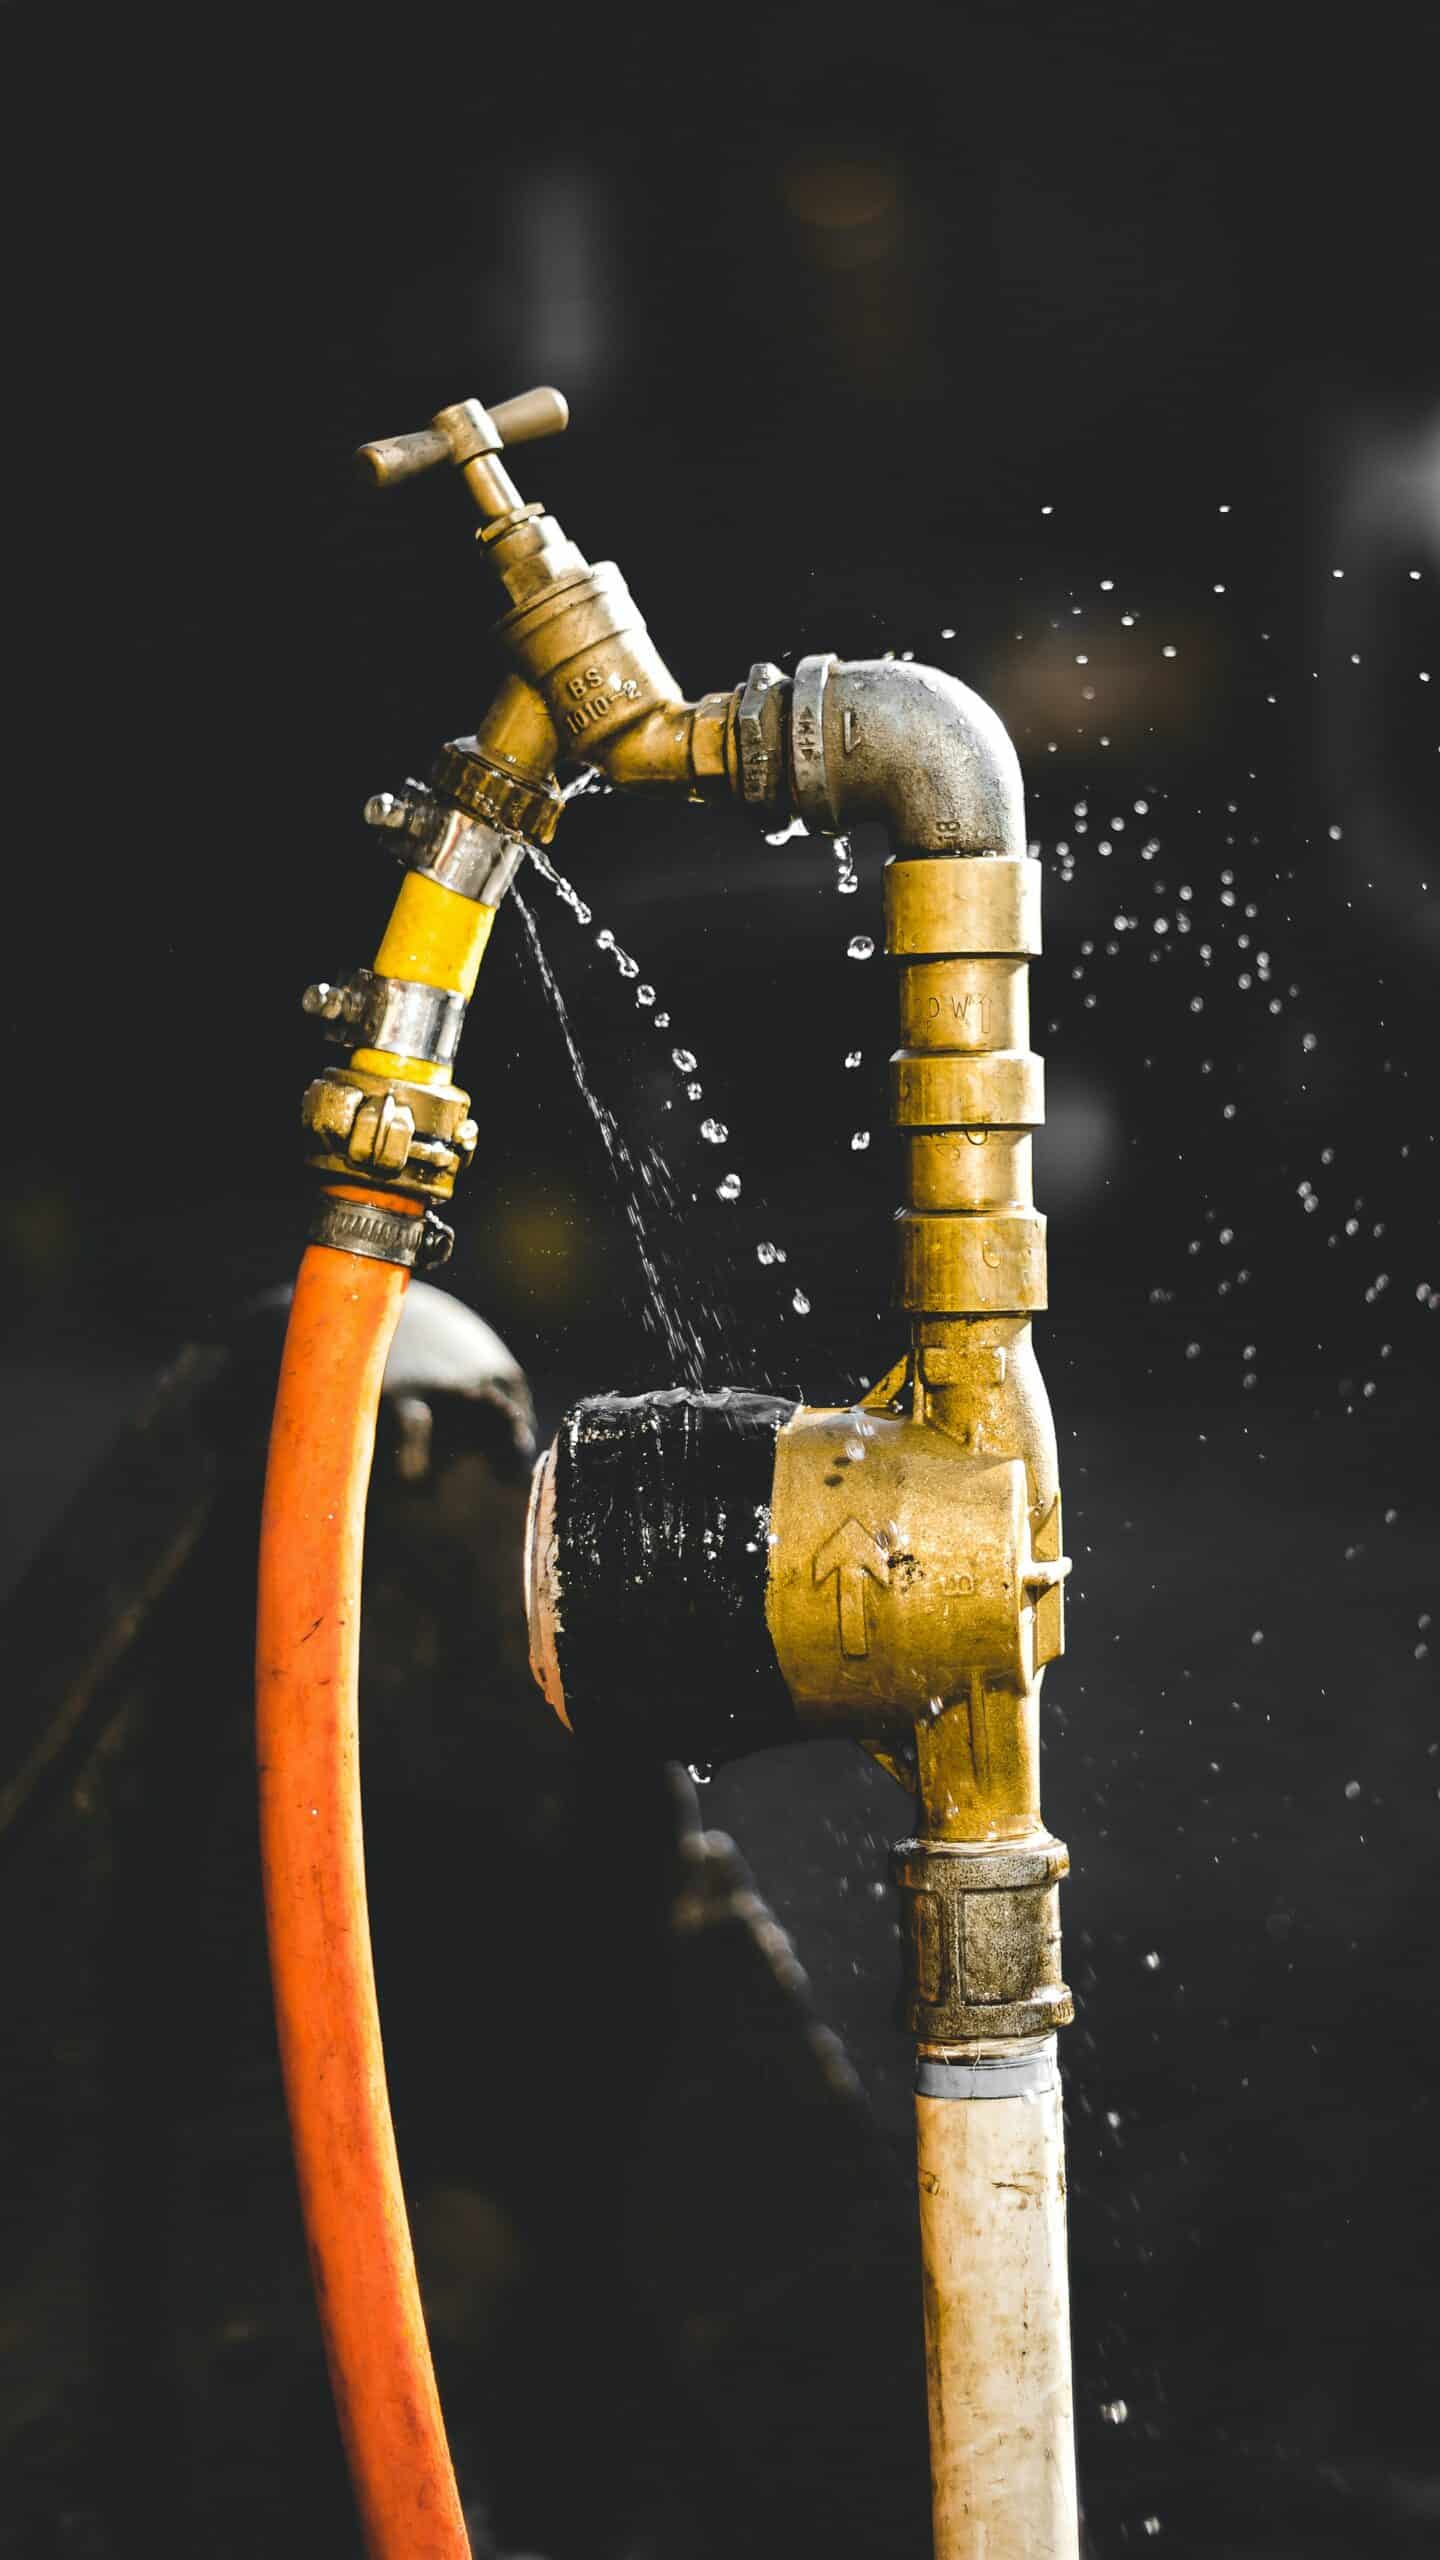 تسرب مياه من الصنبور | شركة تسريب لكشف تسربات المياه